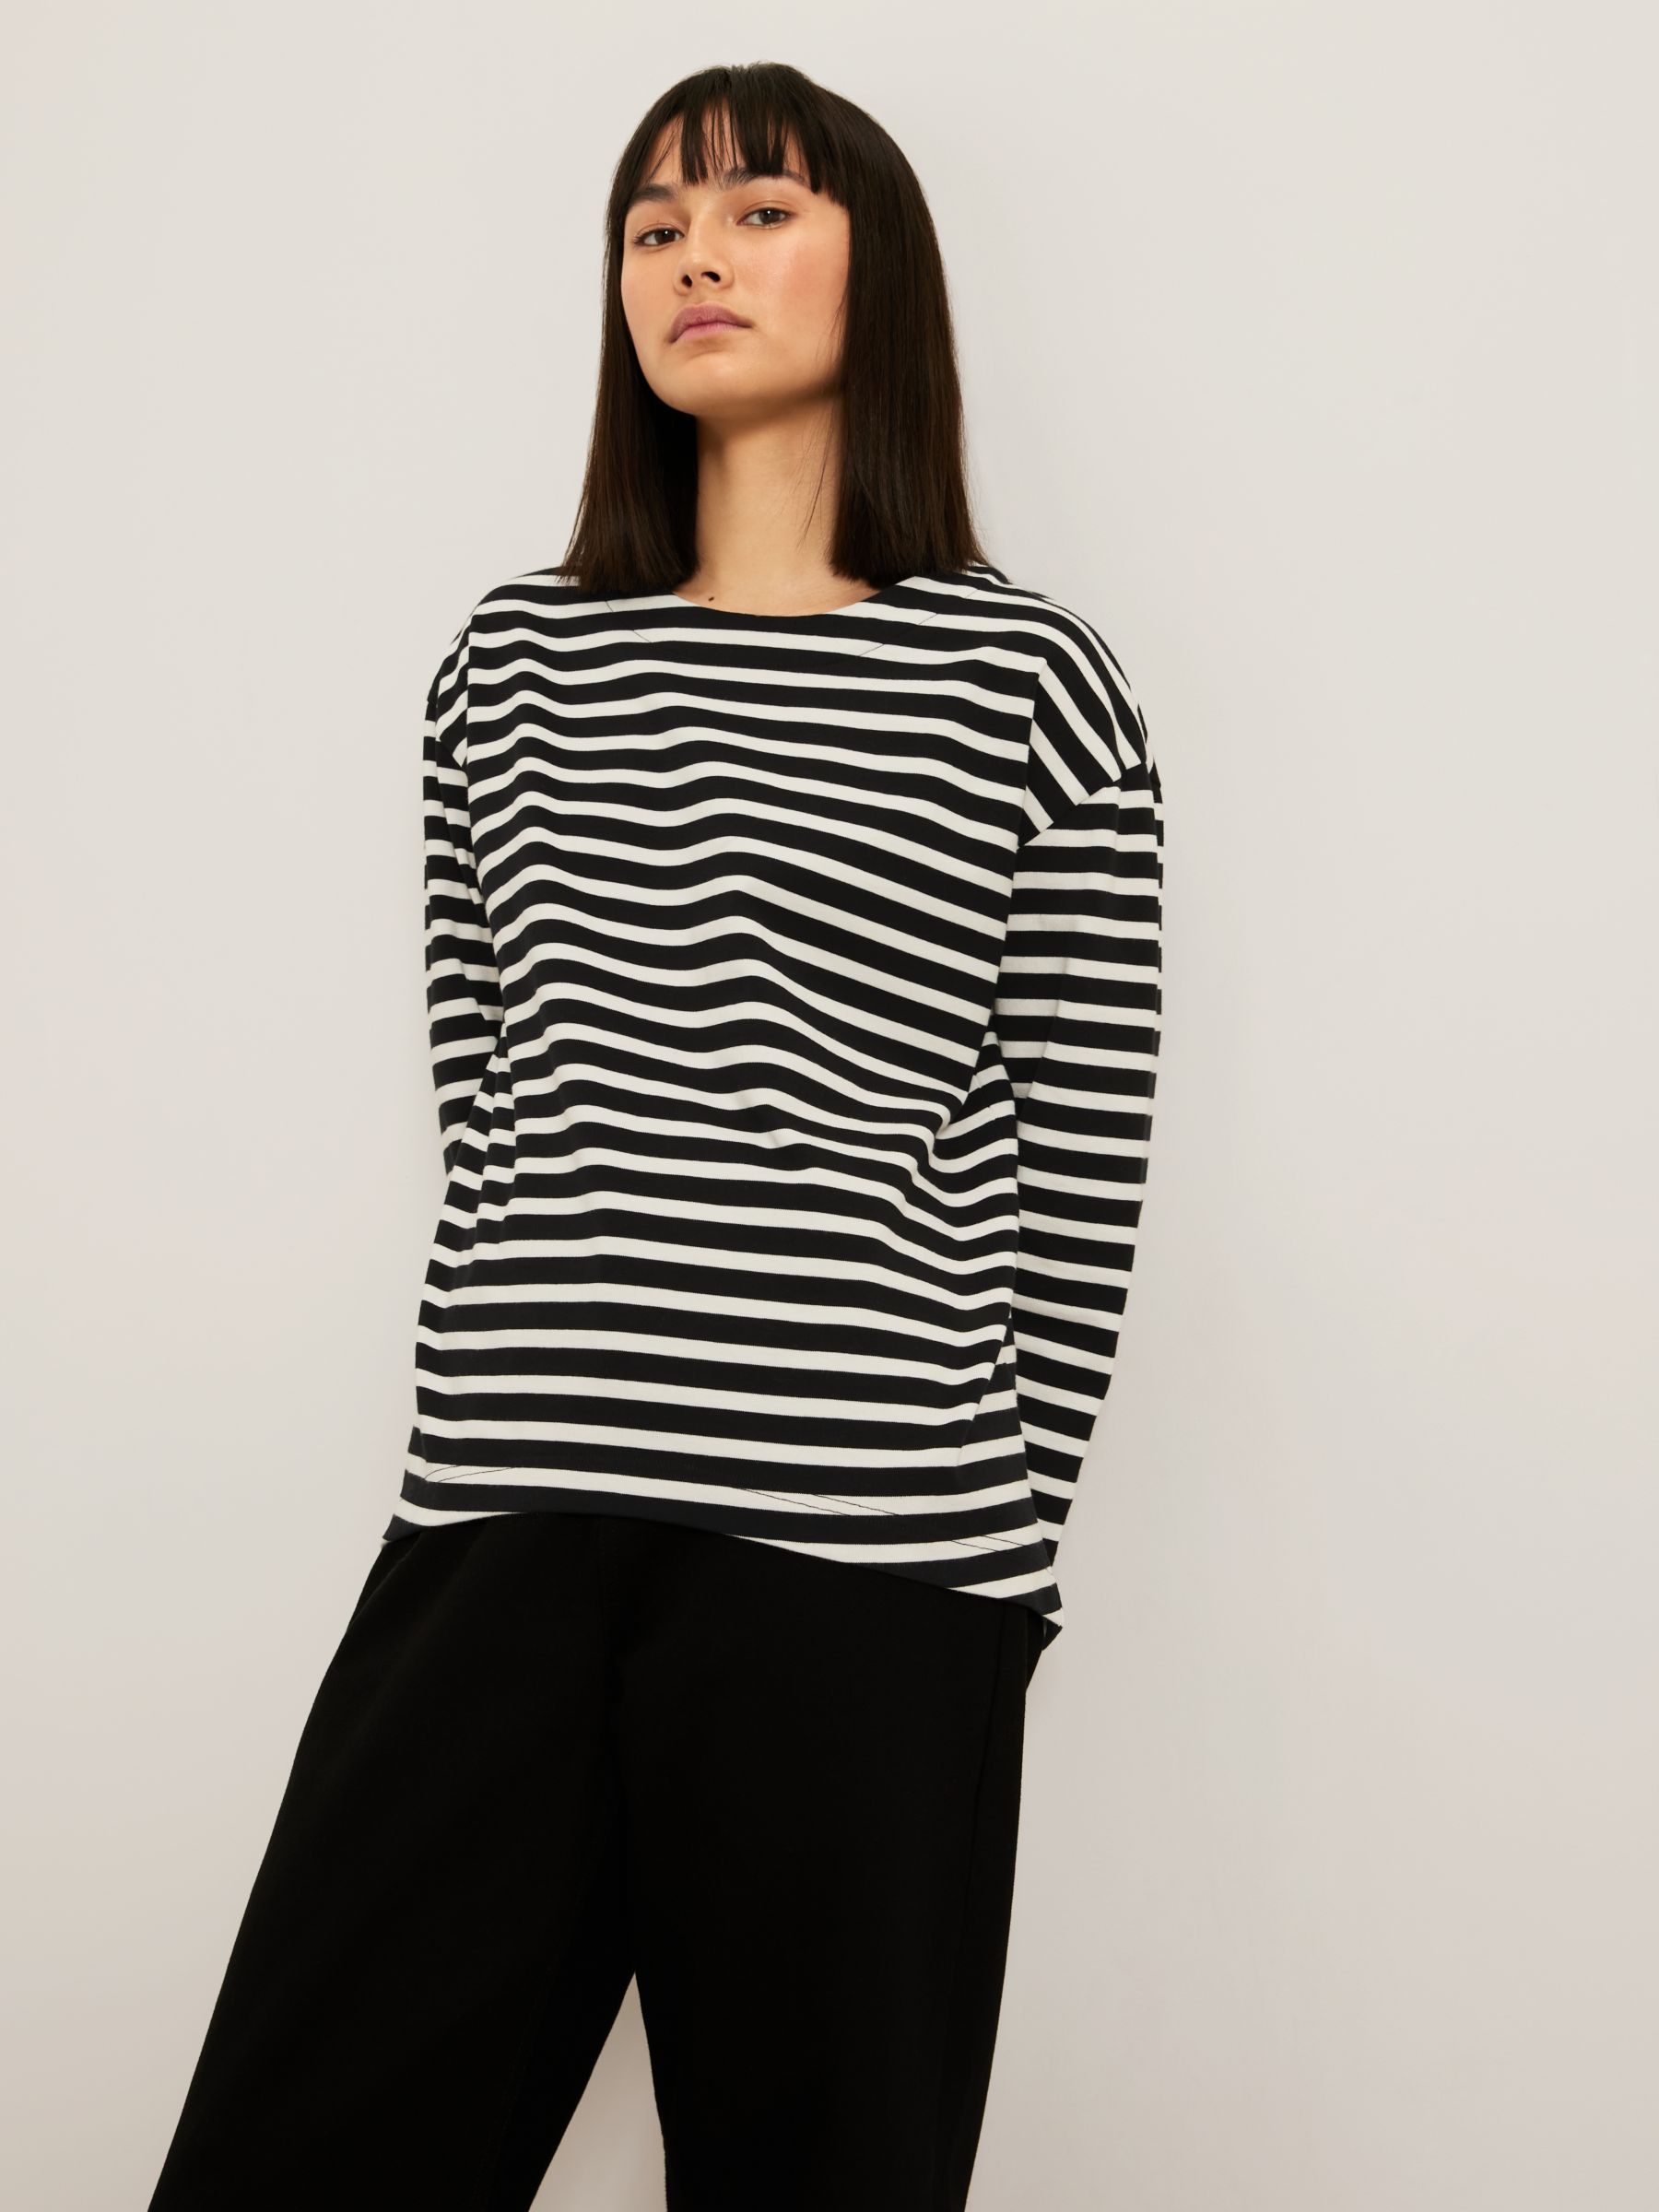 Kin Breton Stripe Jersey Top, Black/White, XS